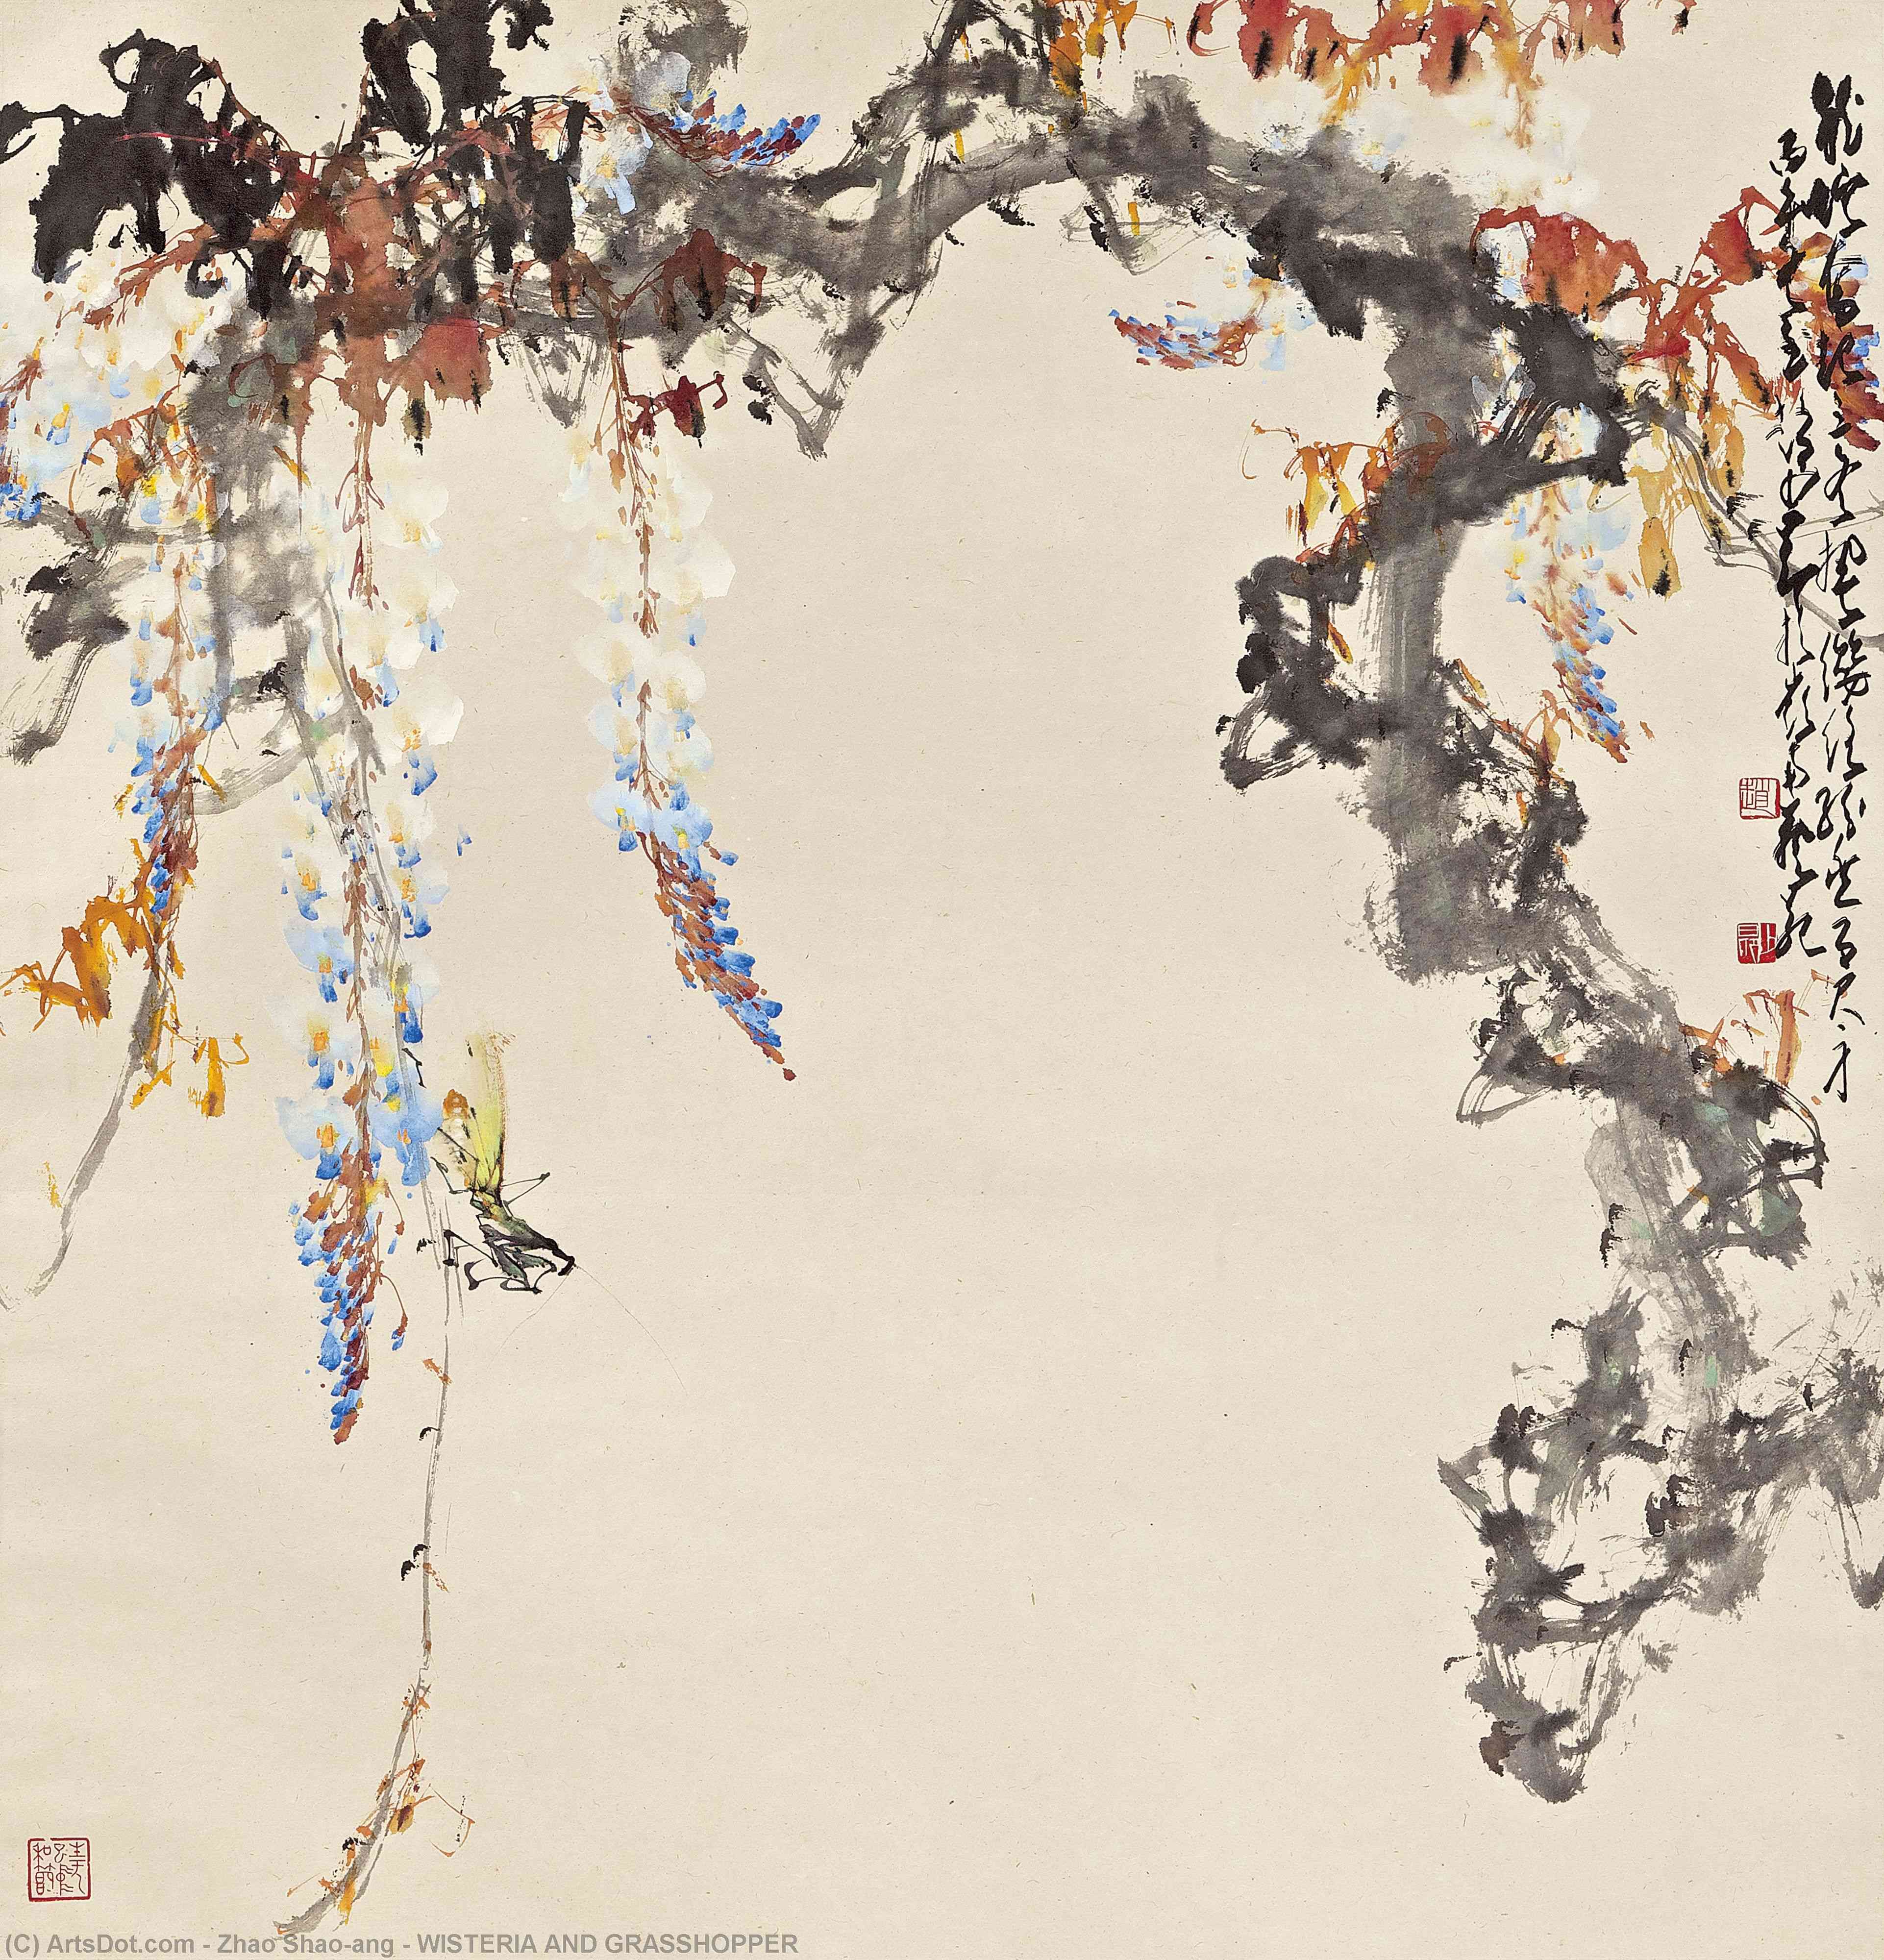 Wikoo.org - موسوعة الفنون الجميلة - اللوحة، العمل الفني Zhao Shao'ang - WISTERIA AND GRASSHOPPER